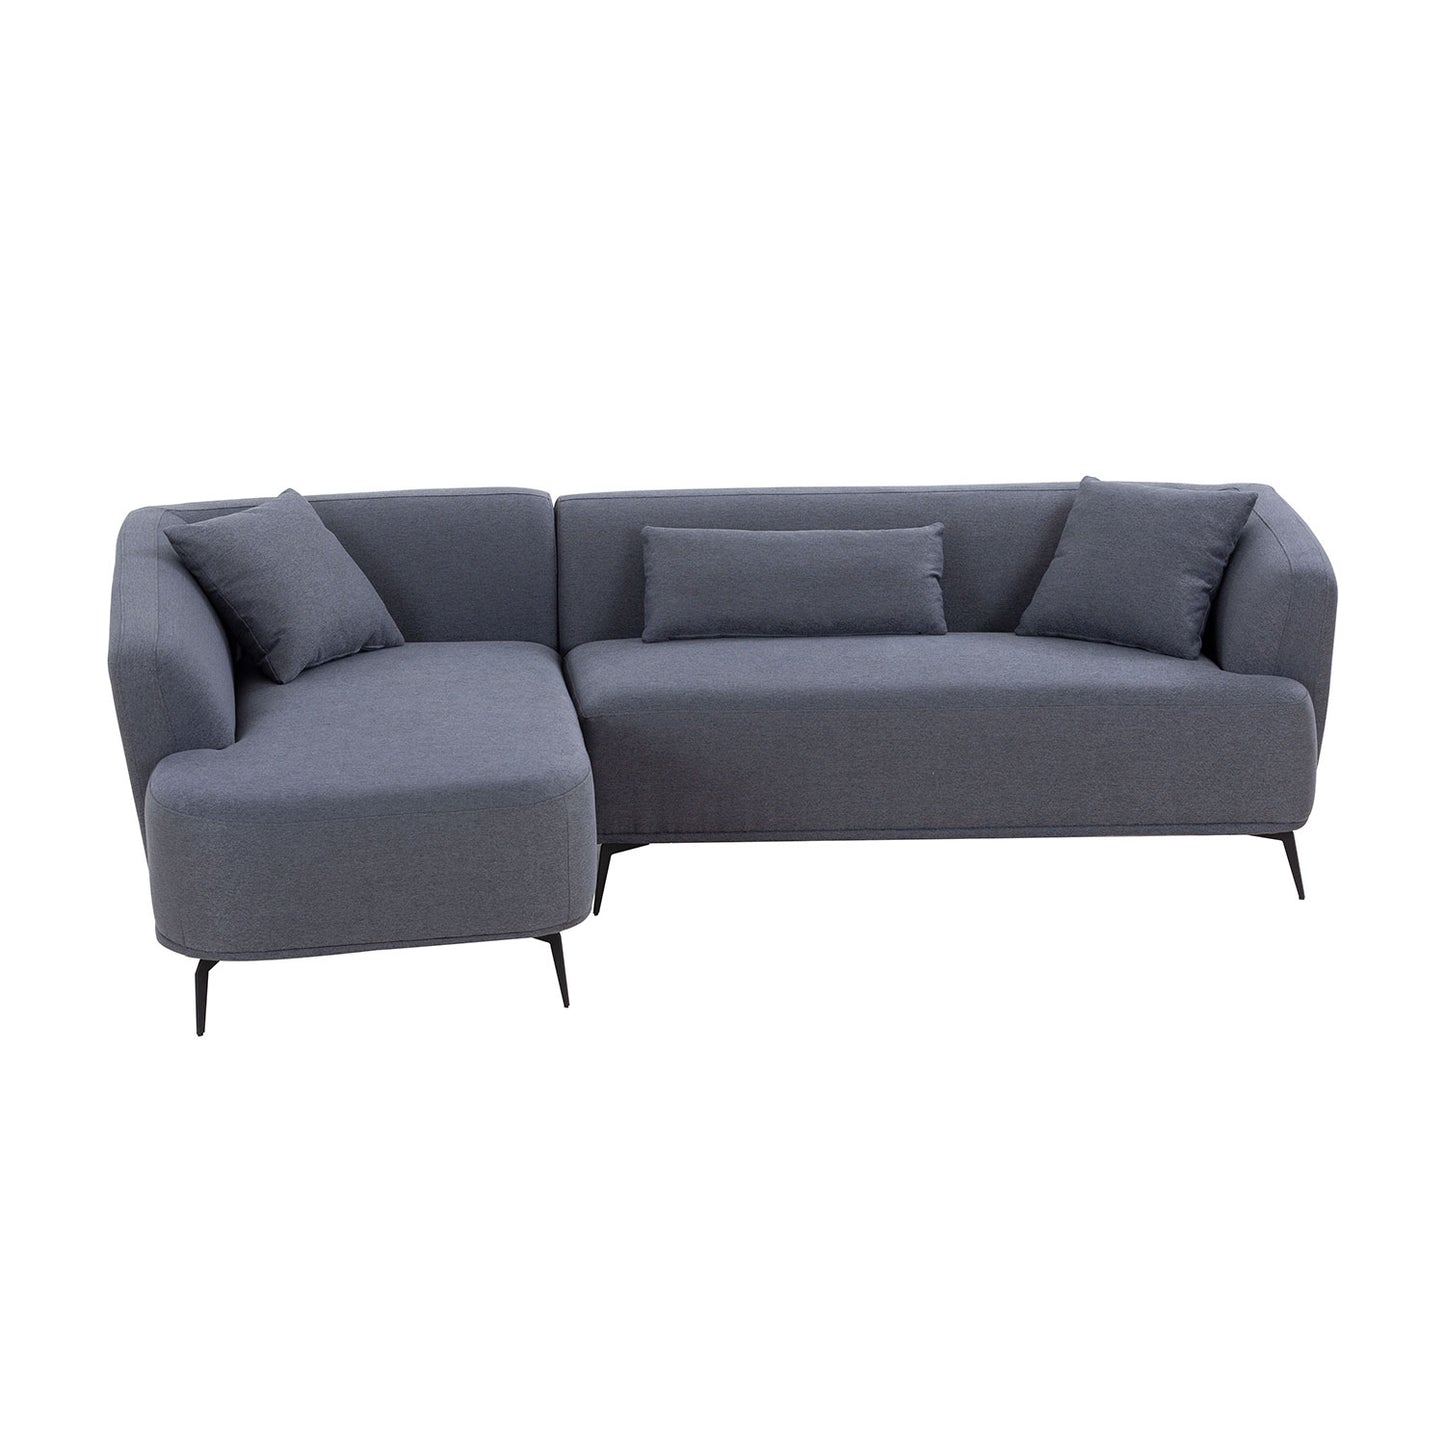 Justone Modern Upholstered Sectional - Dark Gray